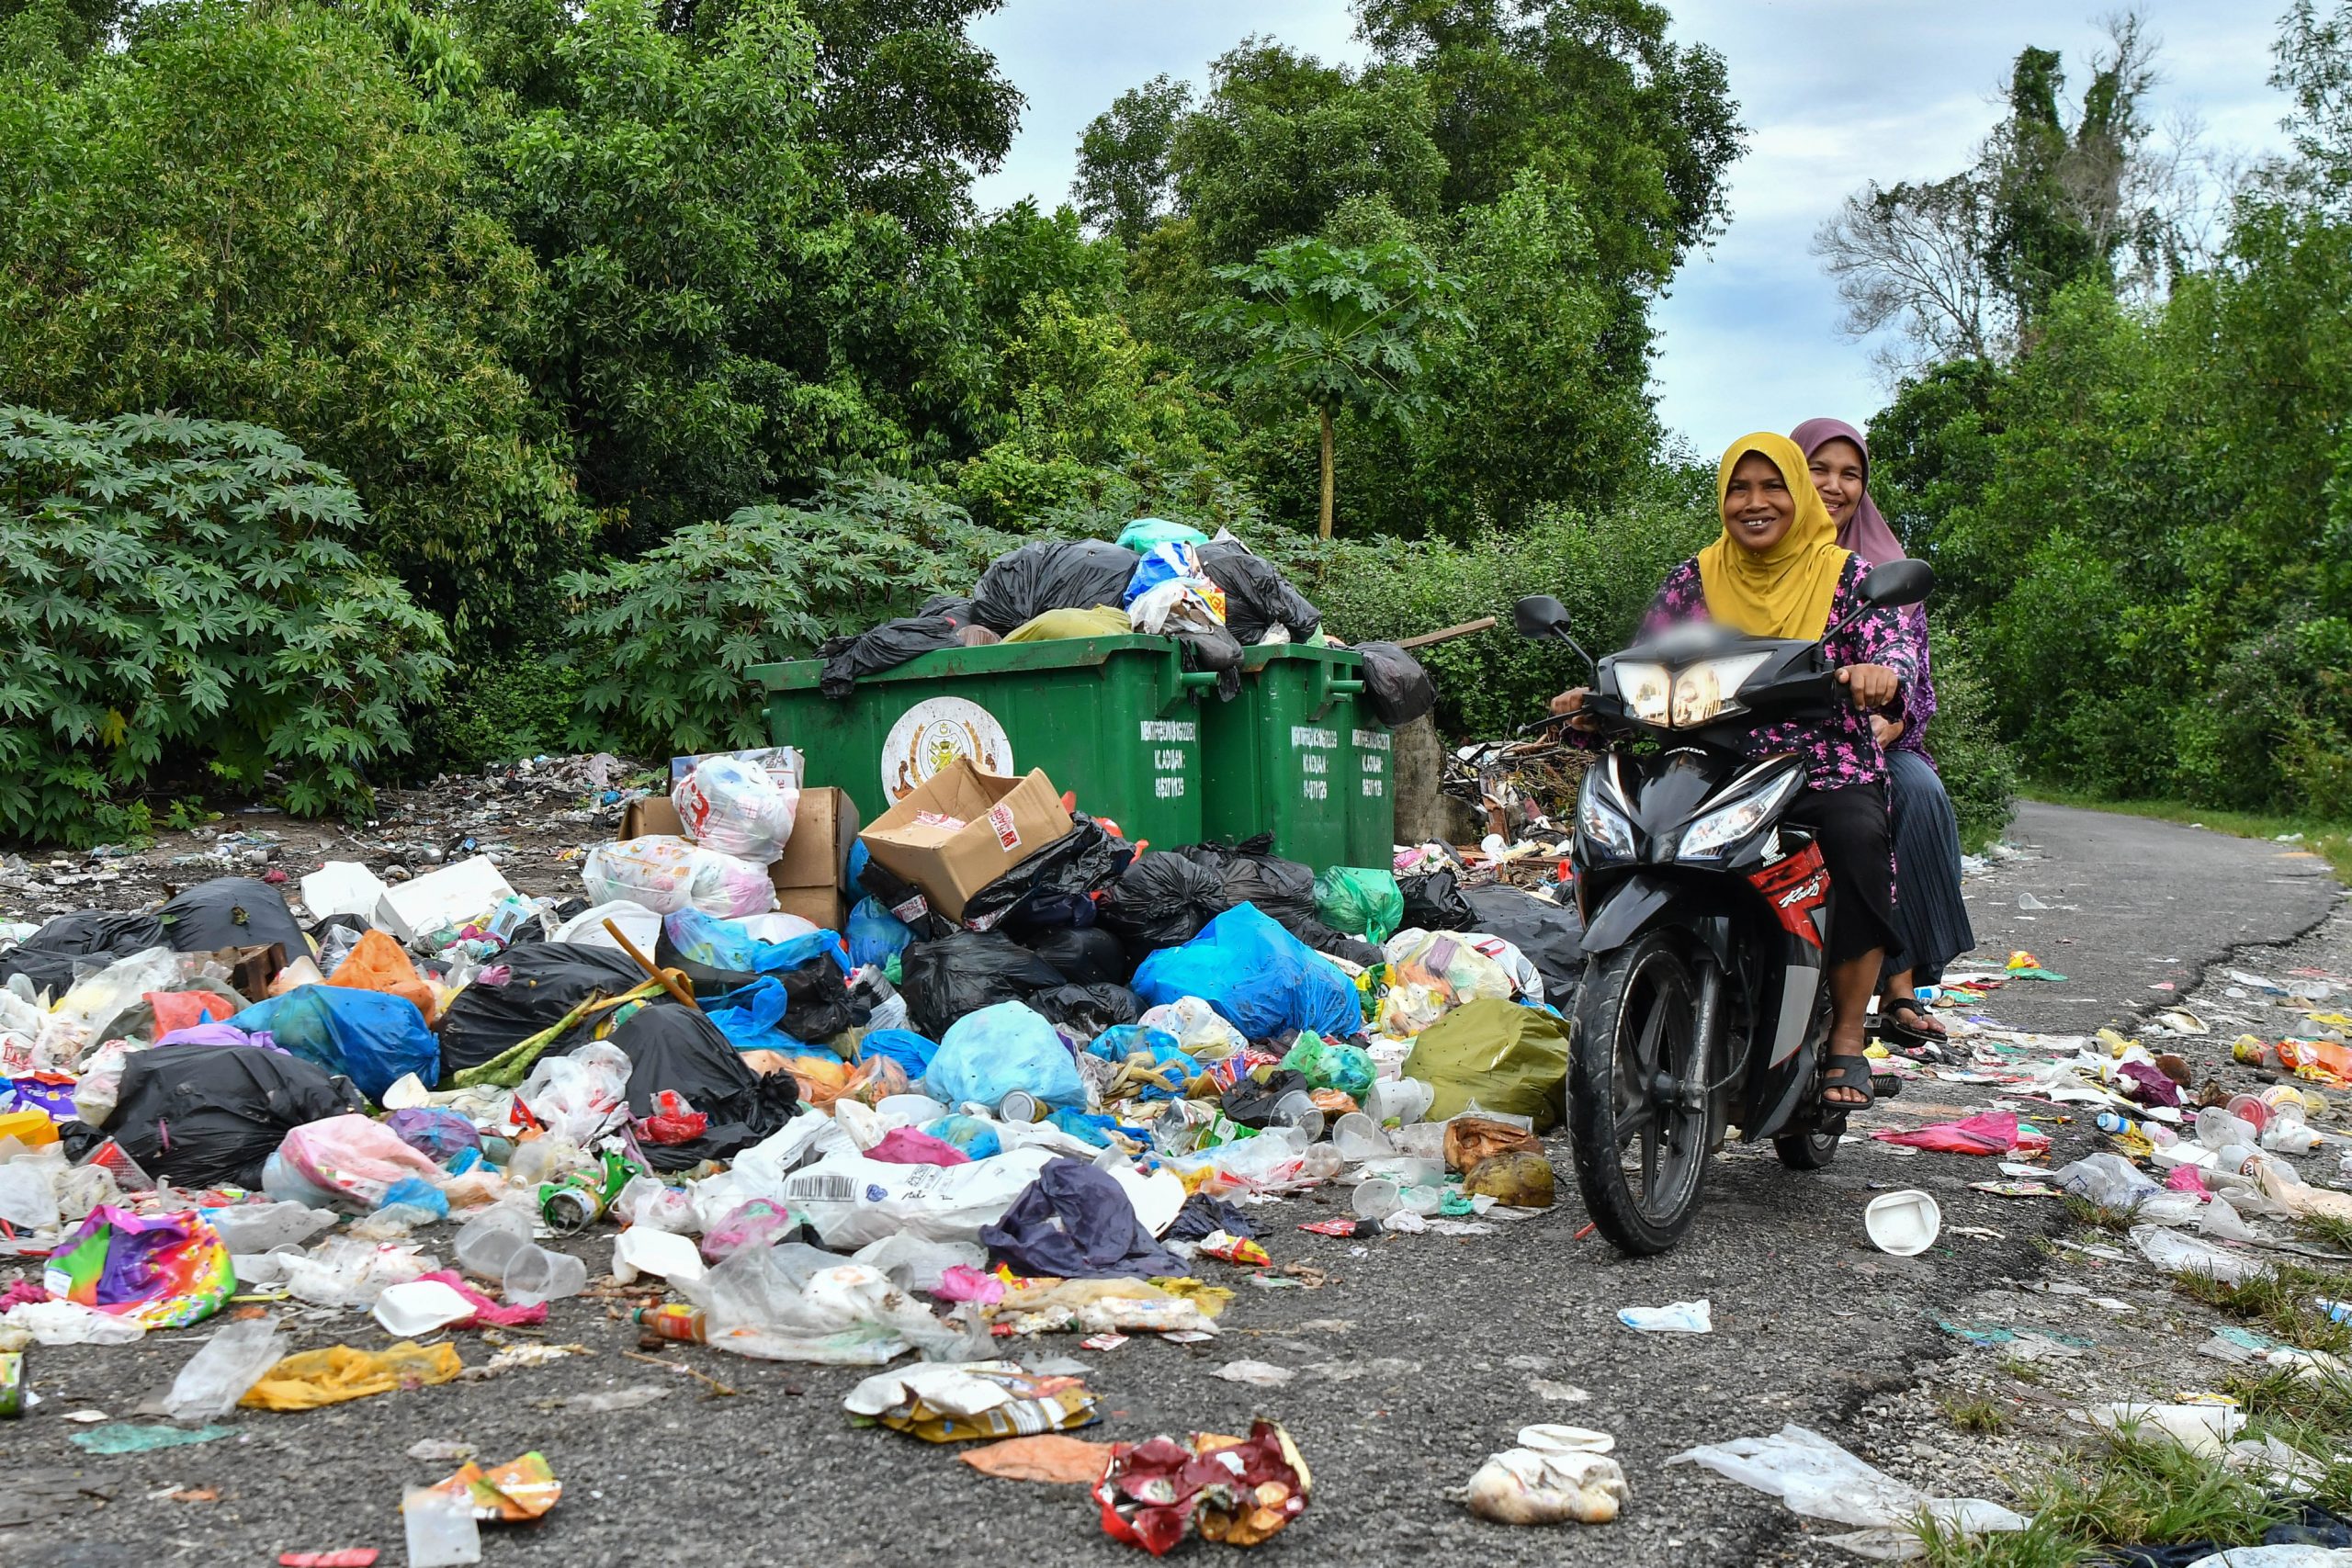 东：疑是缺乏垃圾桶，孟卡邦乐哥住宅区遍地垃圾，环境脏乱不堪，异味臭气冲天，不但污染环境，也影响居民健康，令居民大喊吃不消。